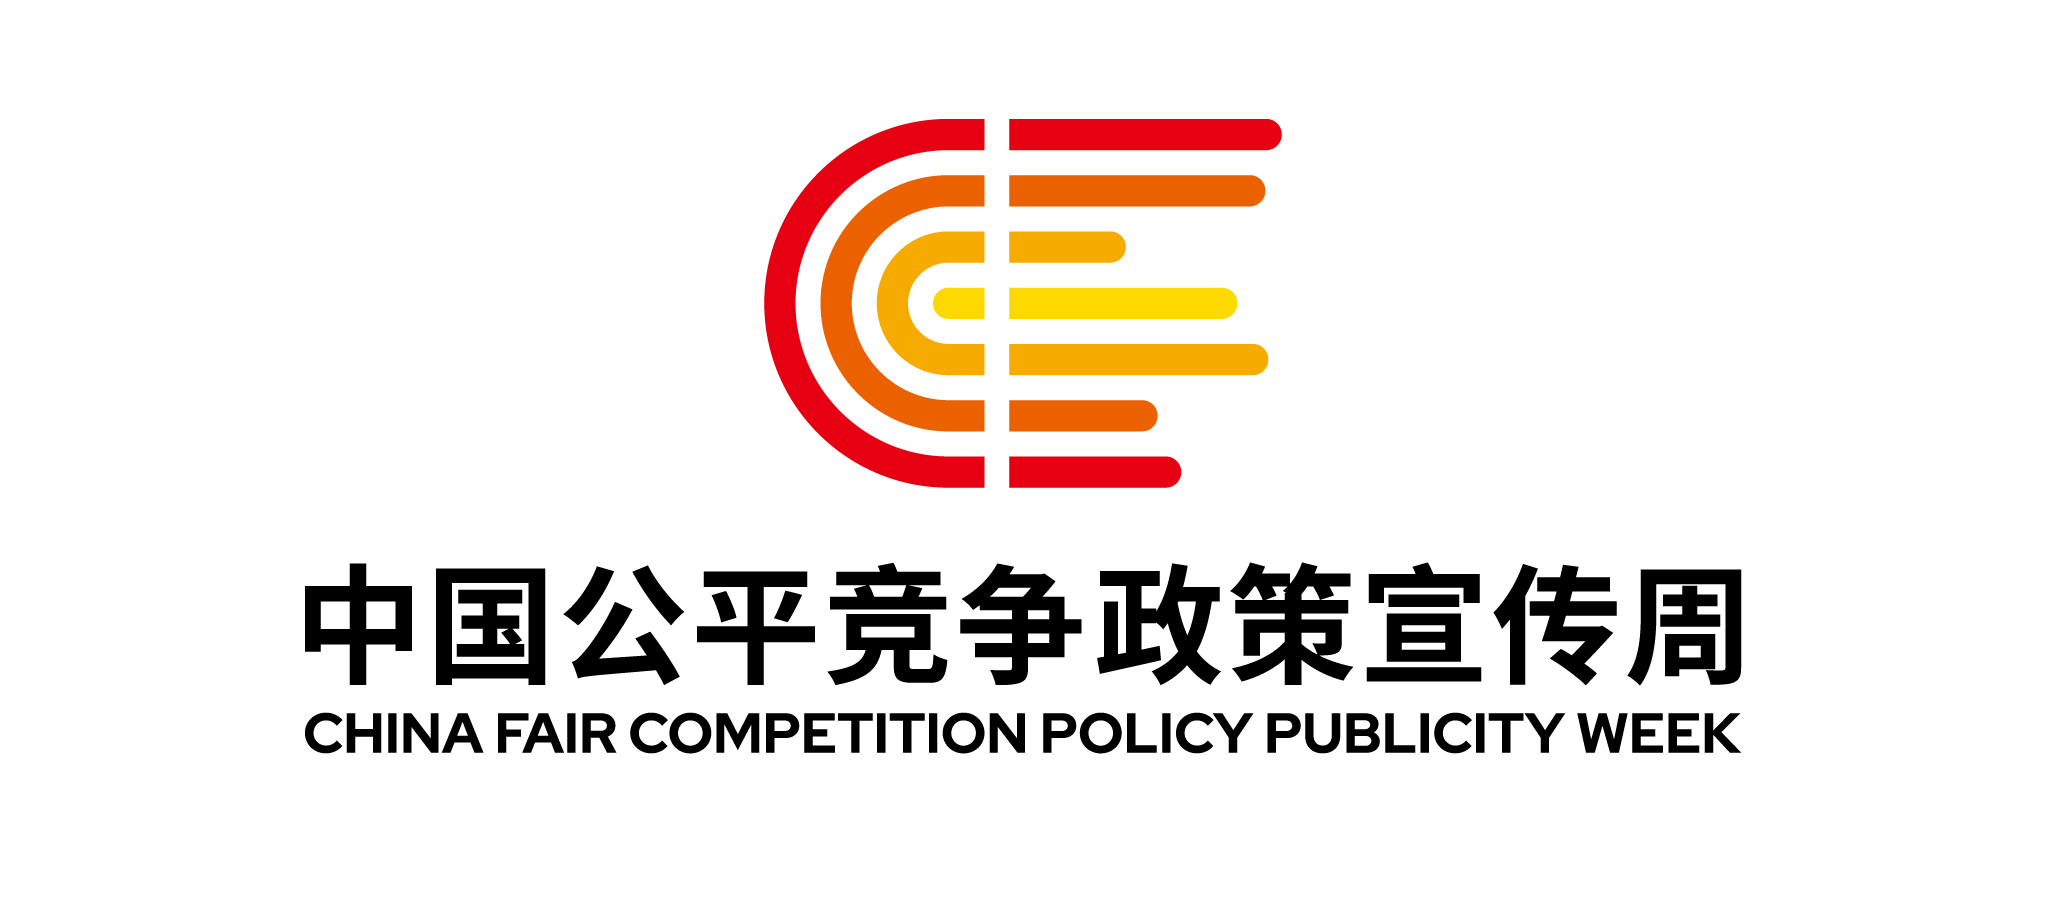 中国公平竞争政策宣传周logo定标_画板 1.jpg